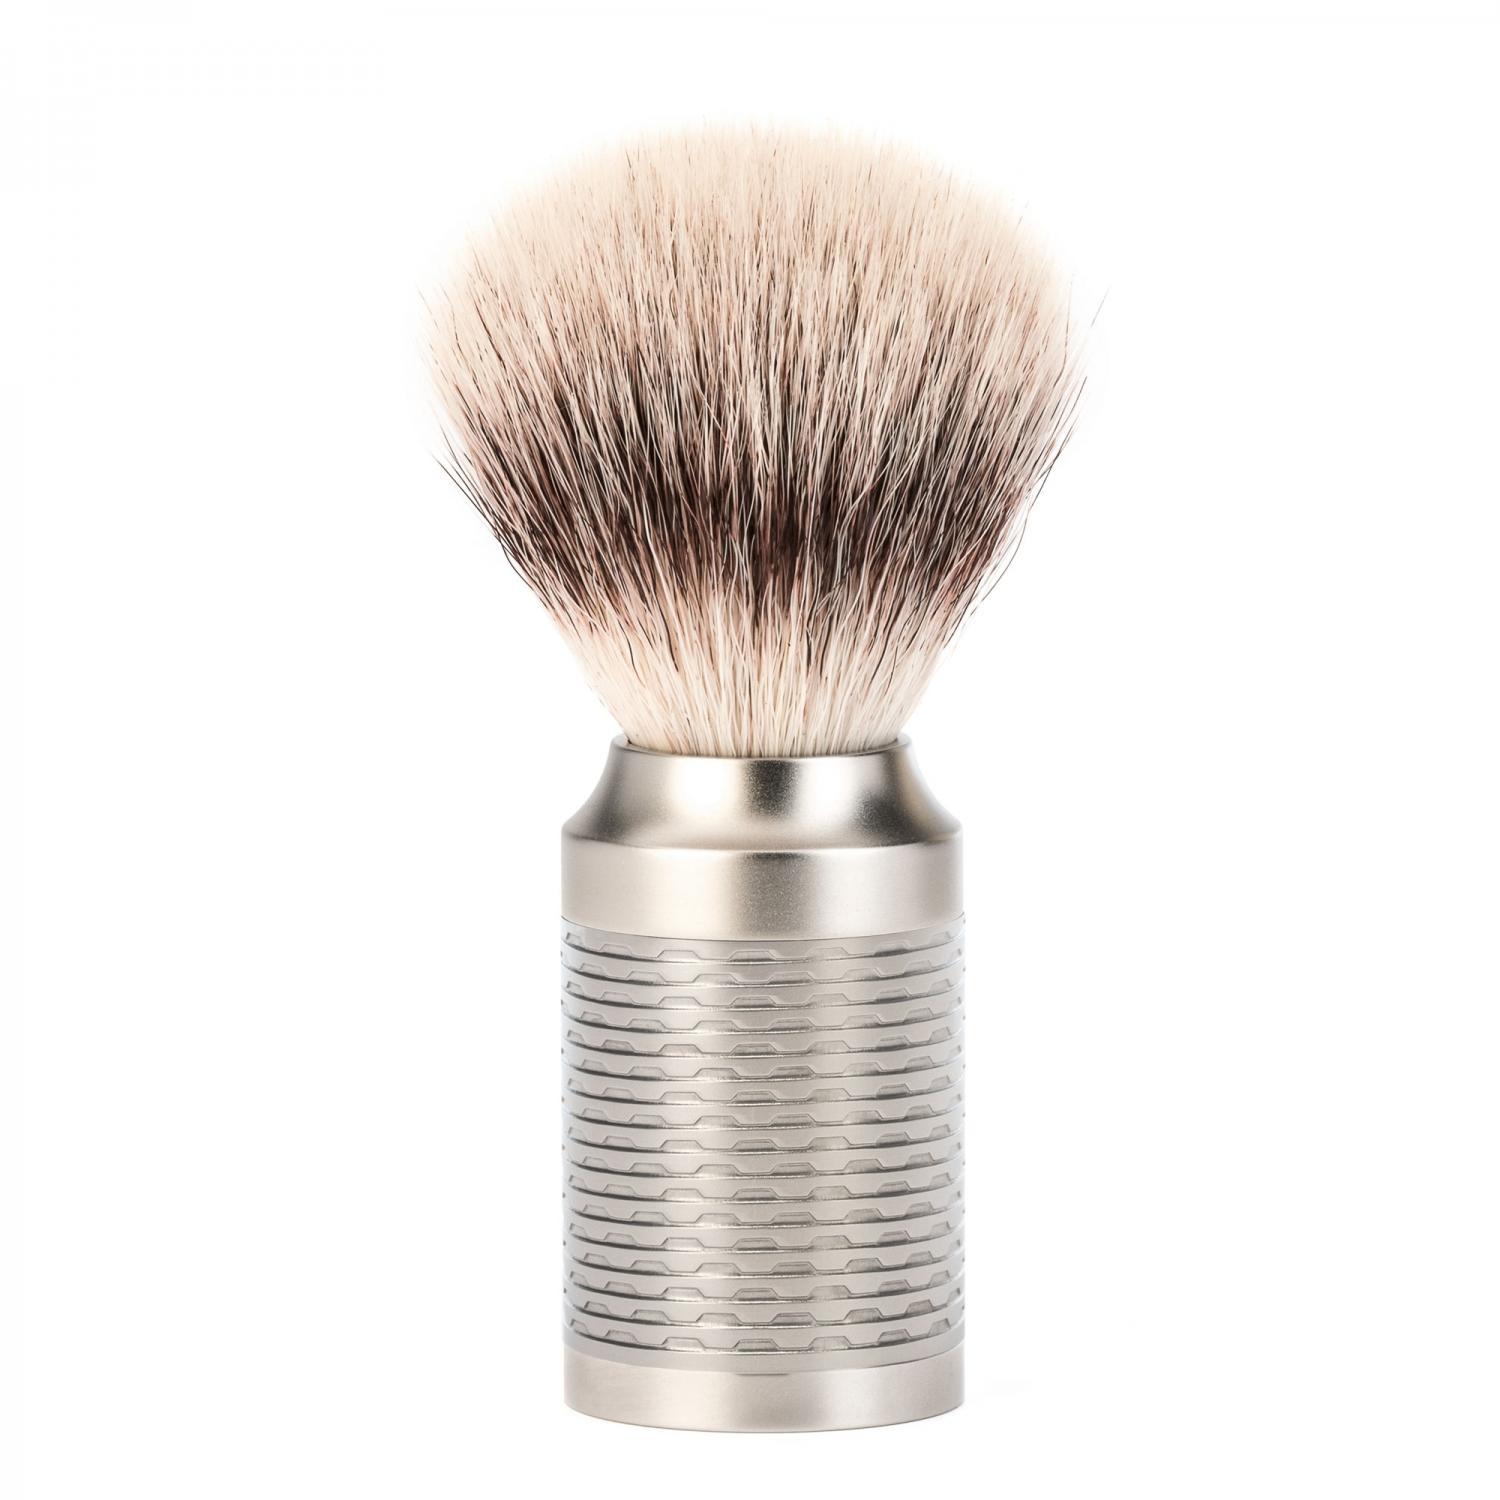 Conjunto de barbear MÜHLE Rocca Silver Matt aço inoxidável de 3 peças de fibra Silvertip e lâmina de segurança, pincel de barbear